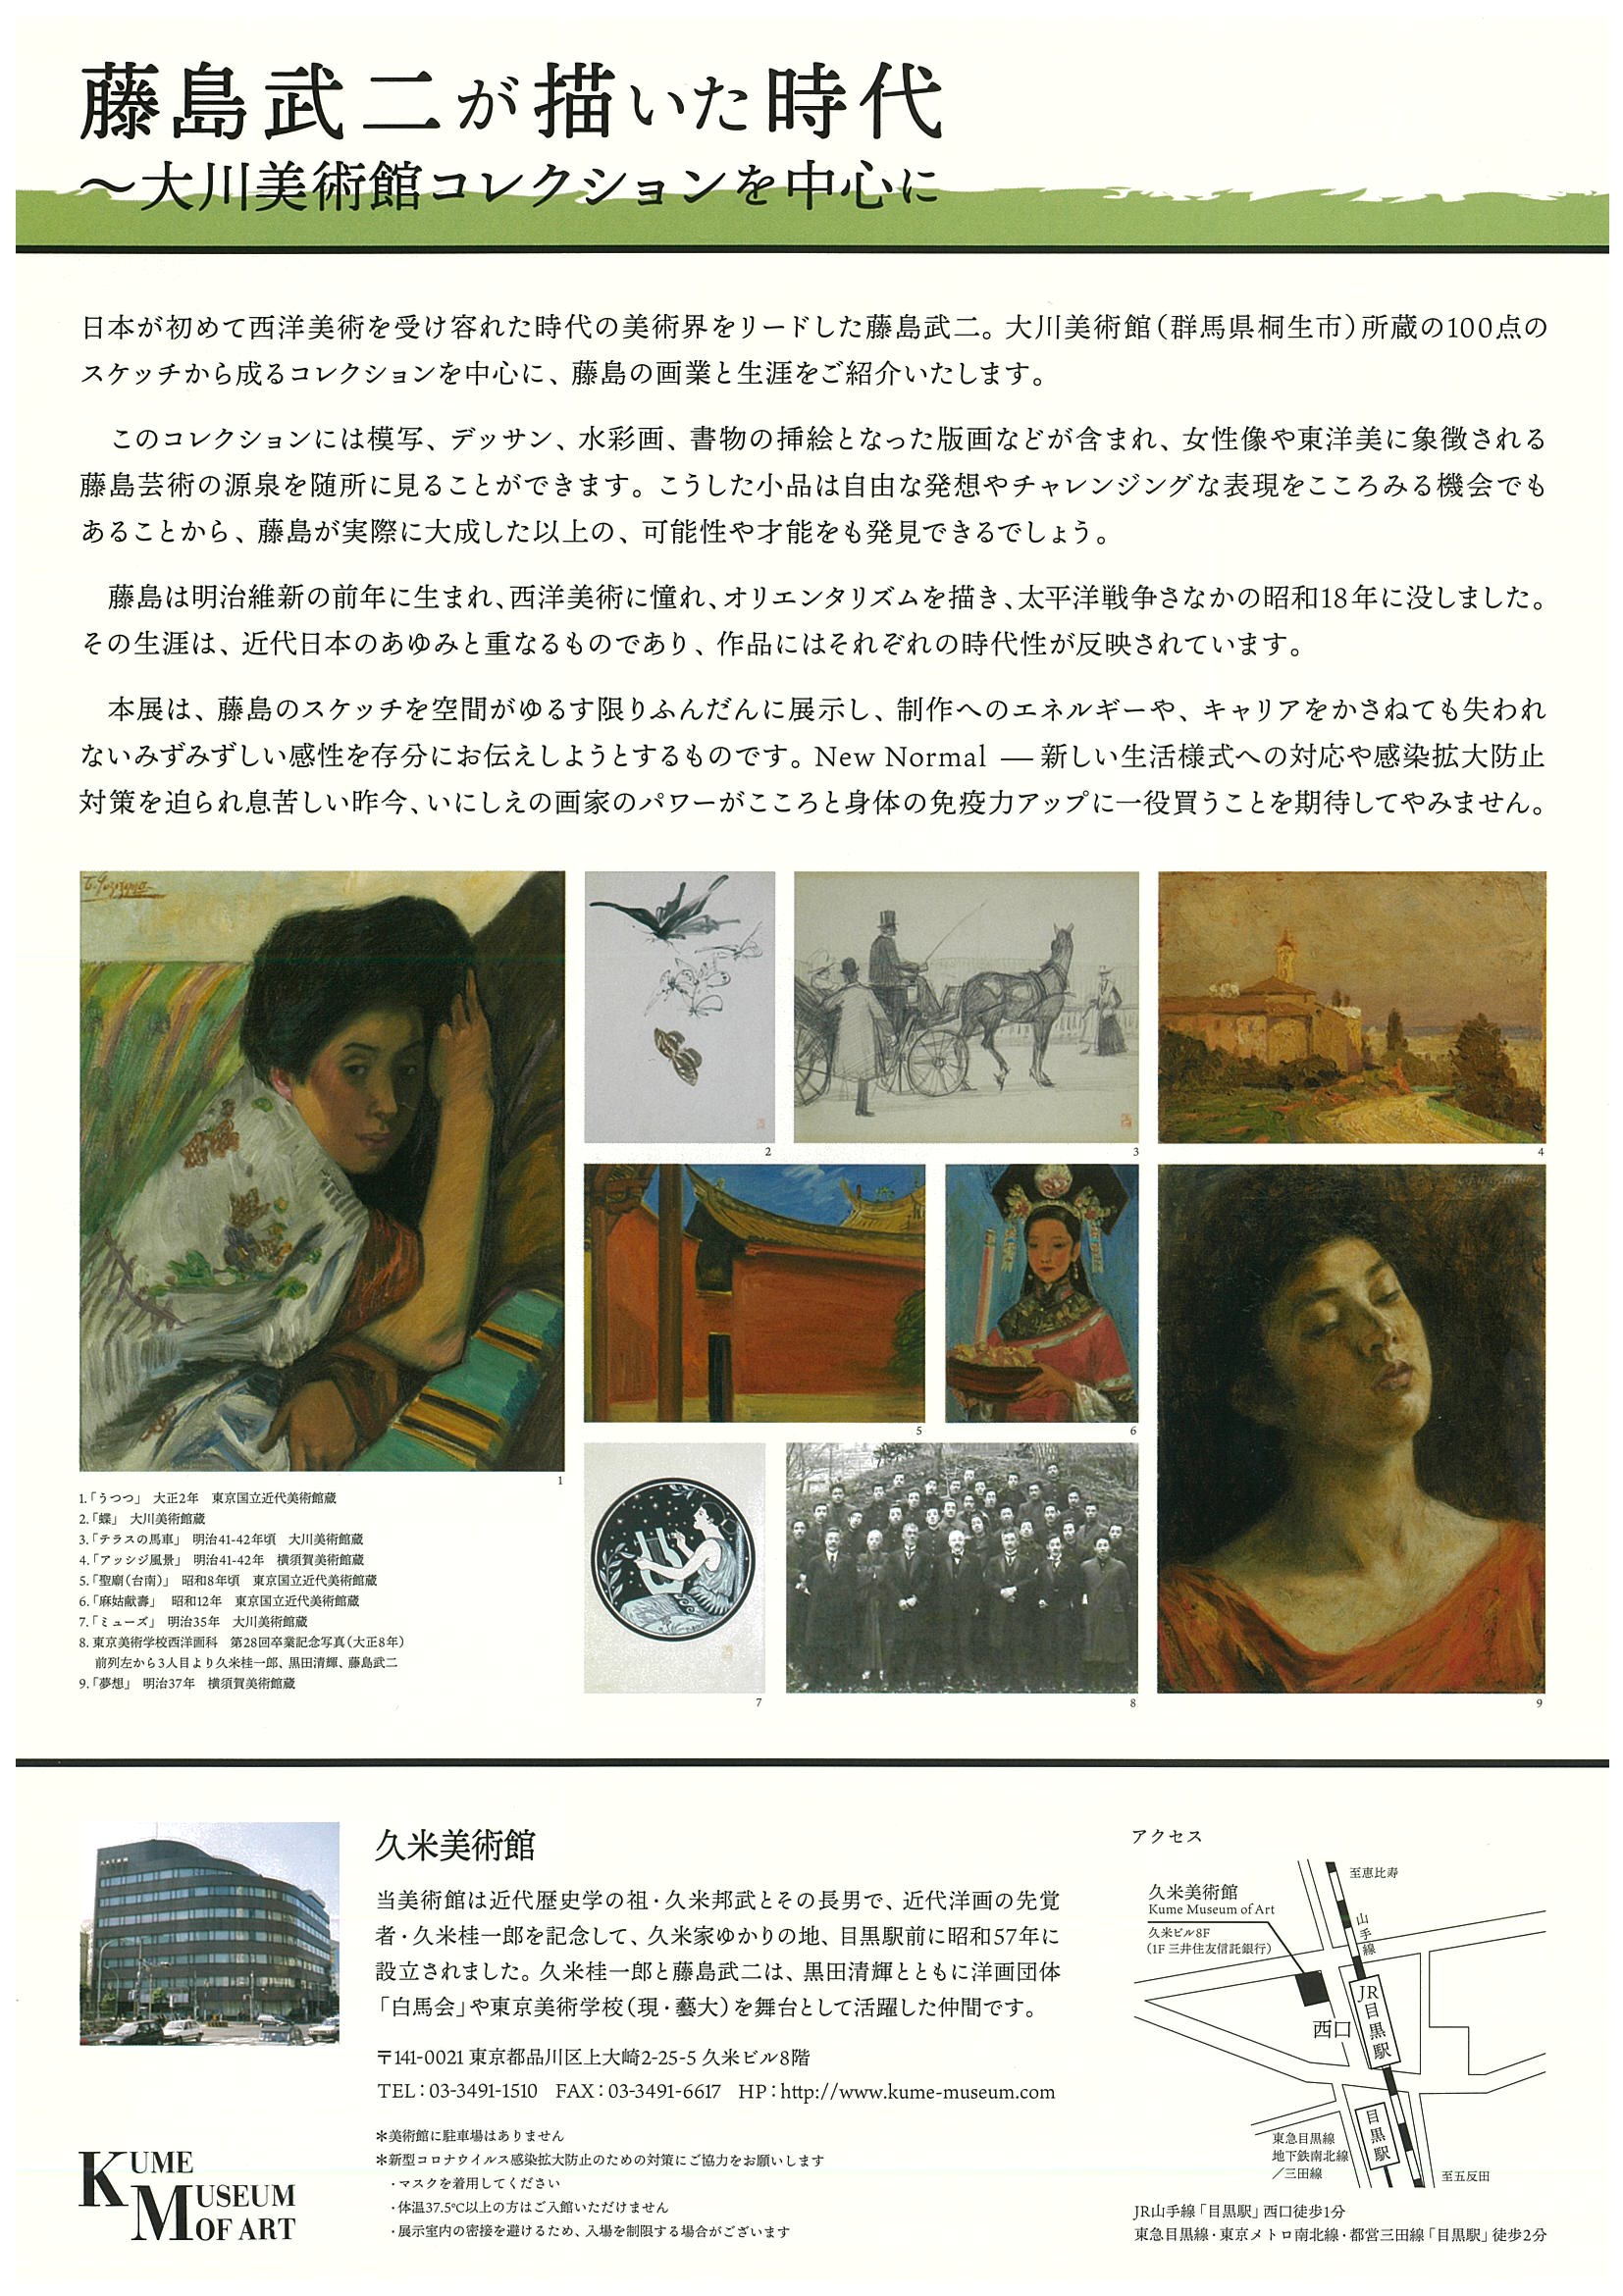 
10月31日（土）～
　　　　12月13日（日）
久米美術館にて
「藤島武二が描いた時代」
大川美術館コレクションを中心に
